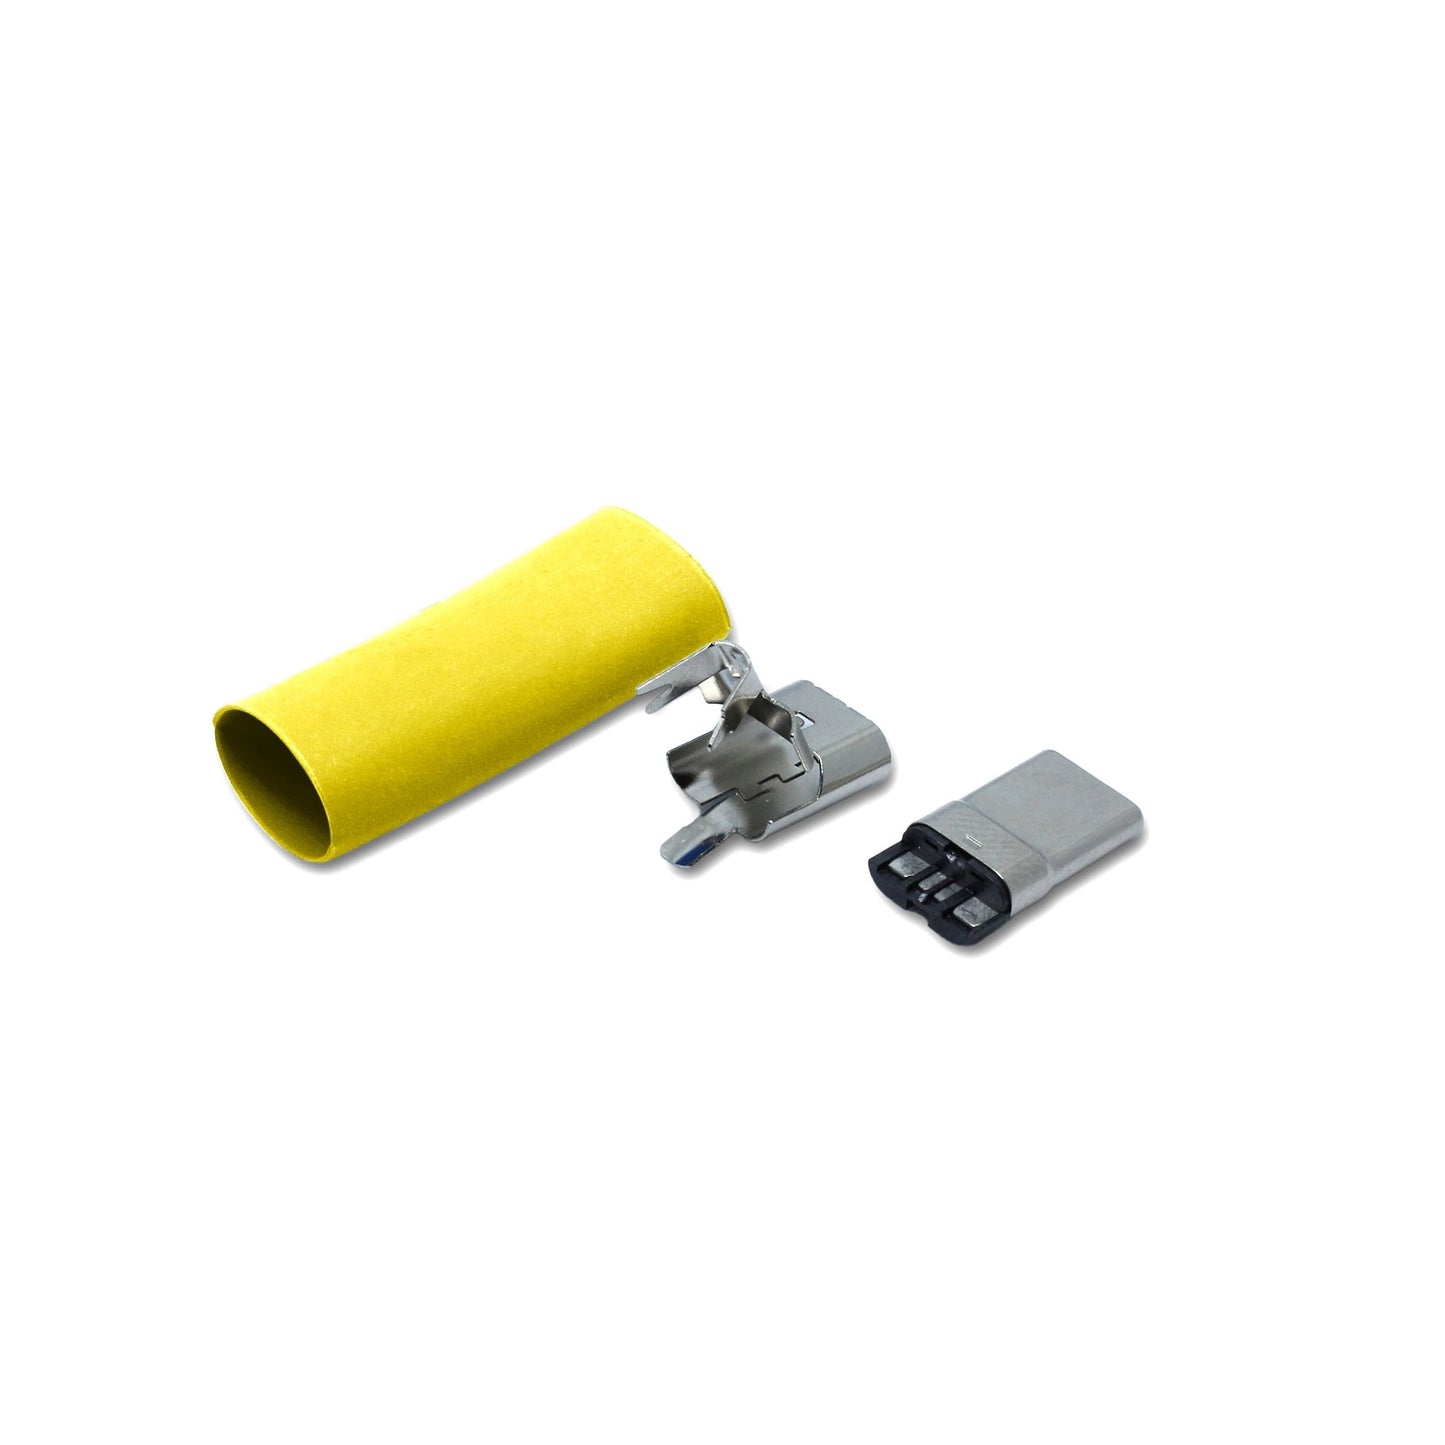 Ein Schrumpfschlauch in der Farbe gelb und Metallteile für den USB C Anschluss